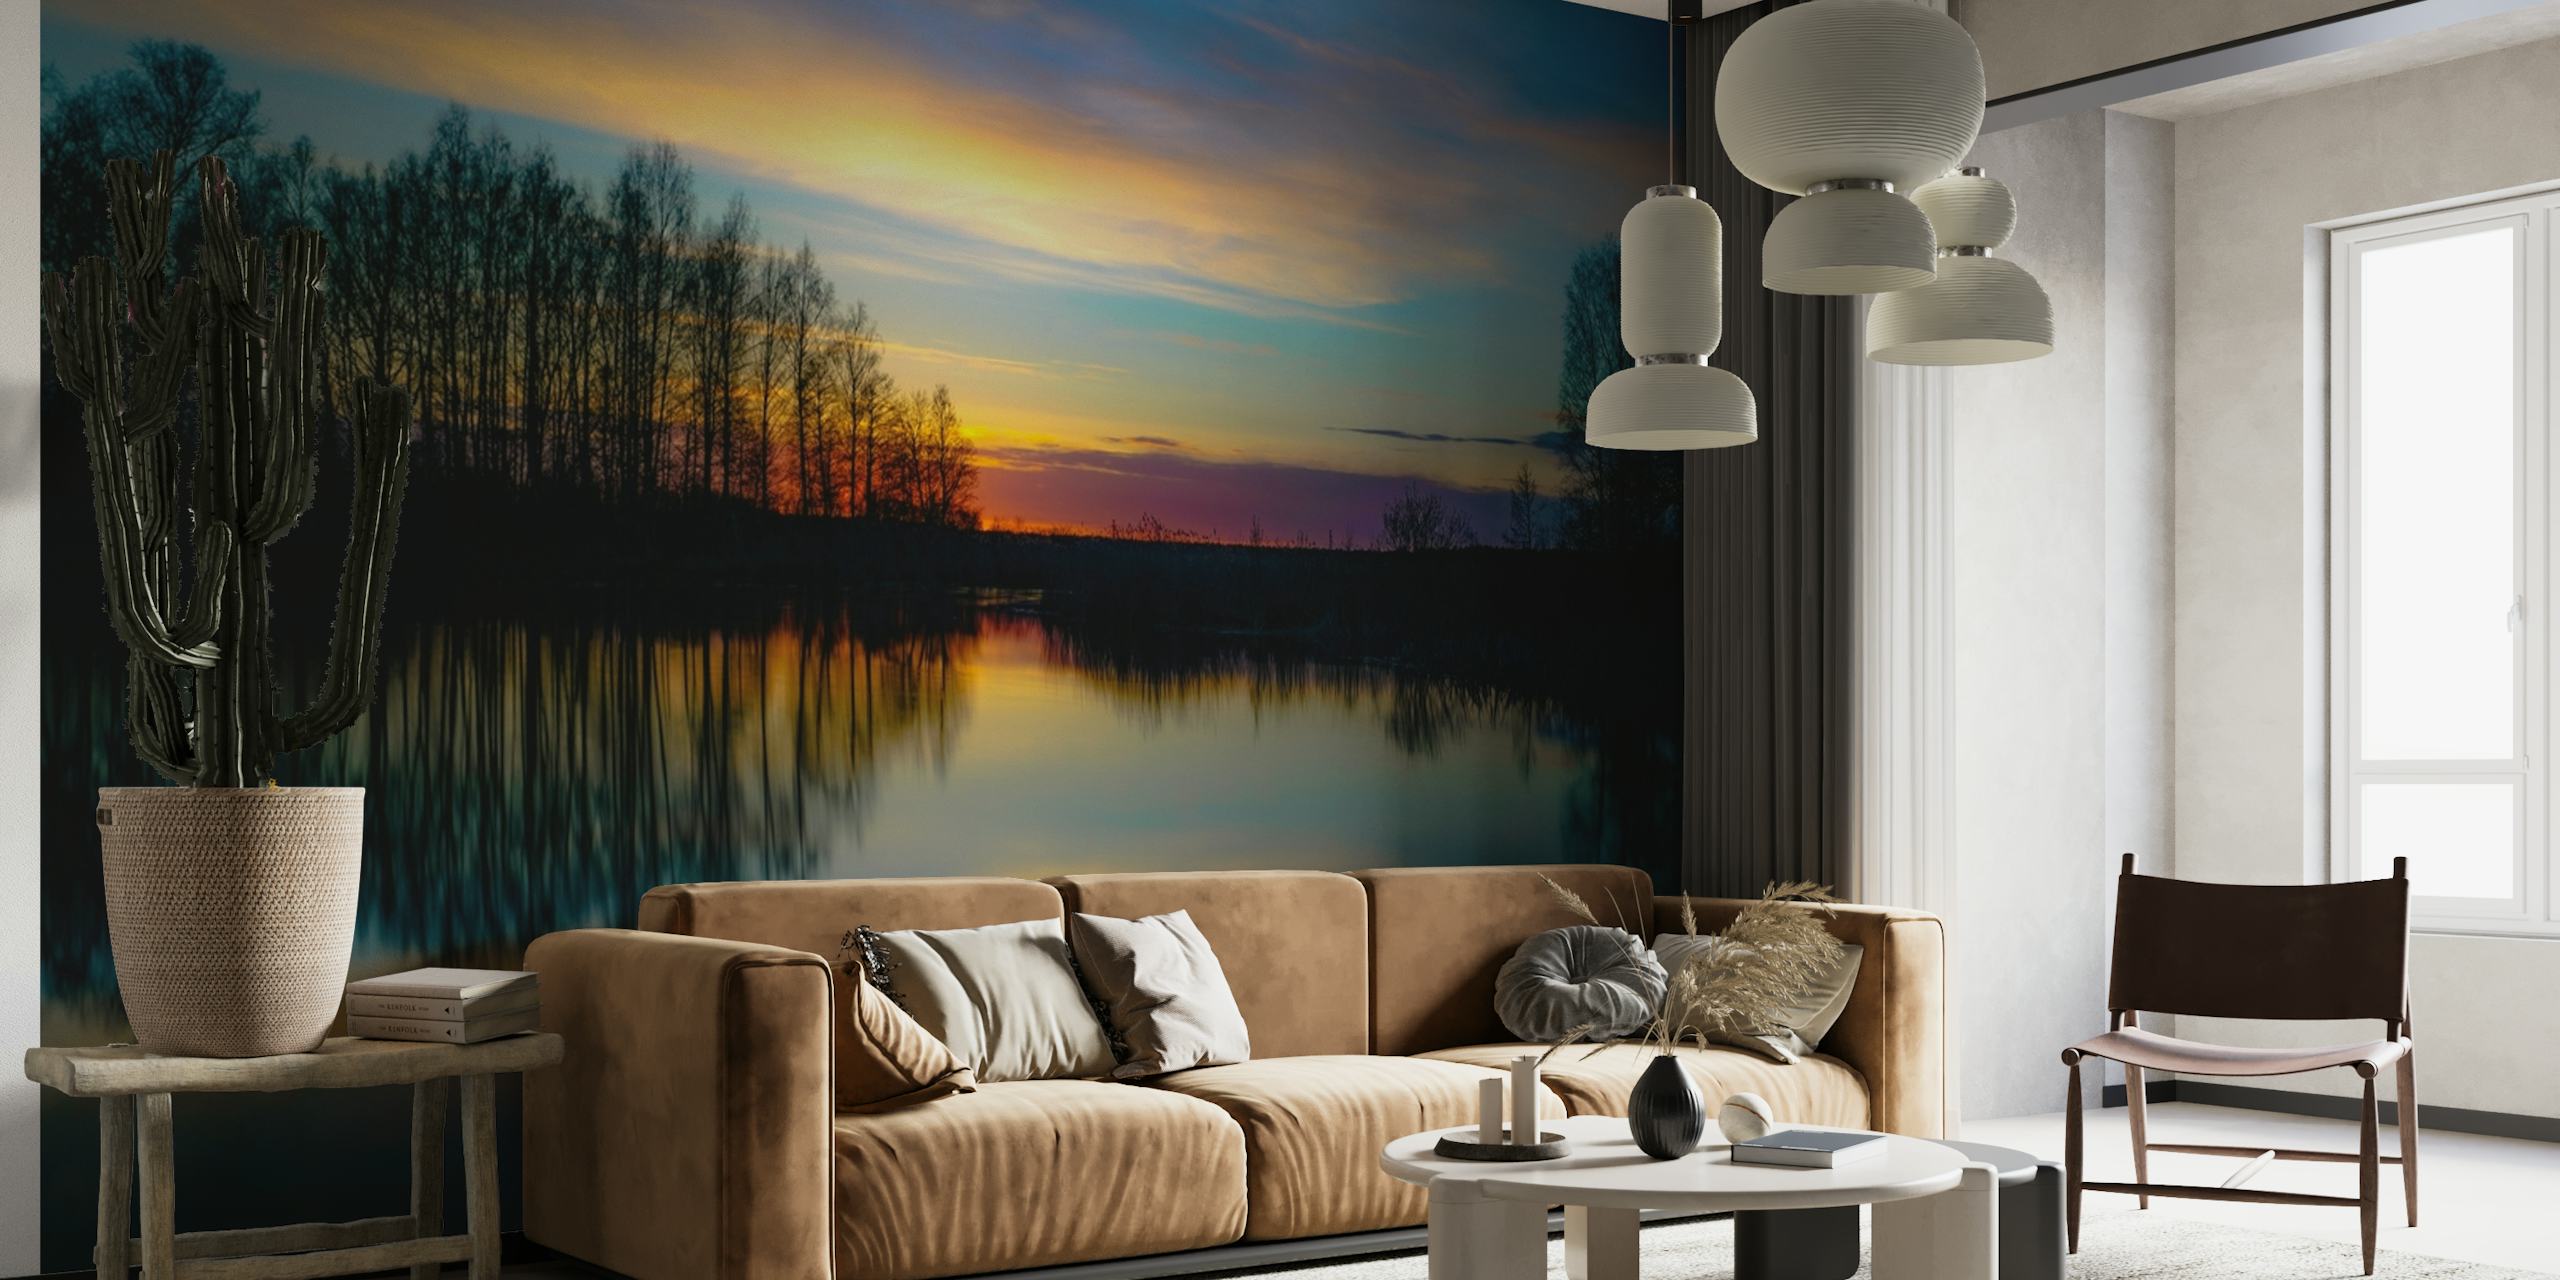 Wandbild eines ruhigen Sonnenuntergangs am See mit lebendigen Farben und Baumsilhouetten